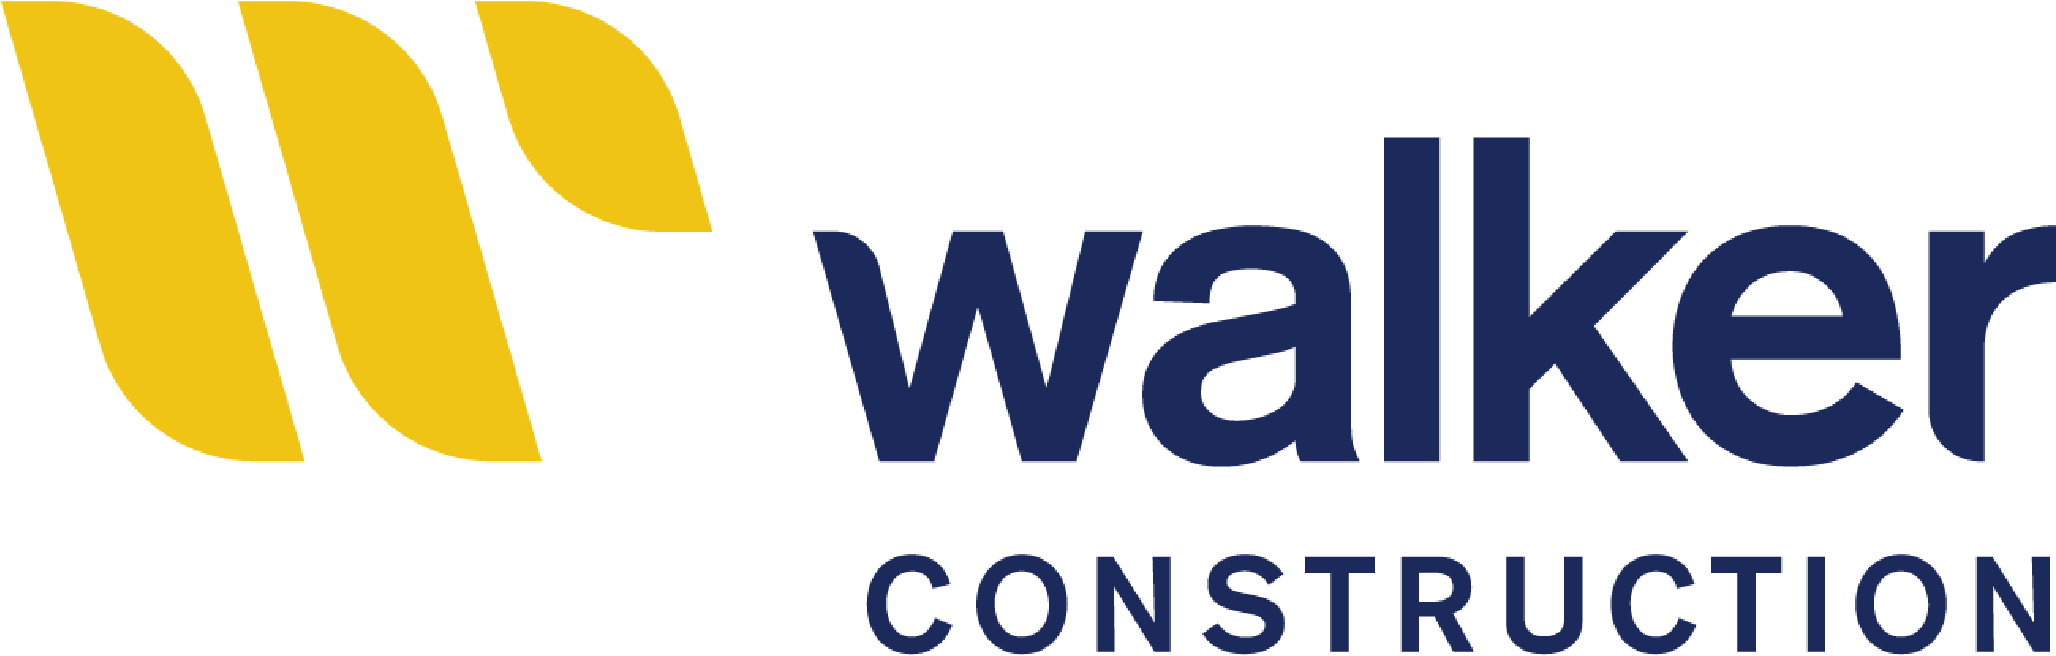 Walker Construction logo